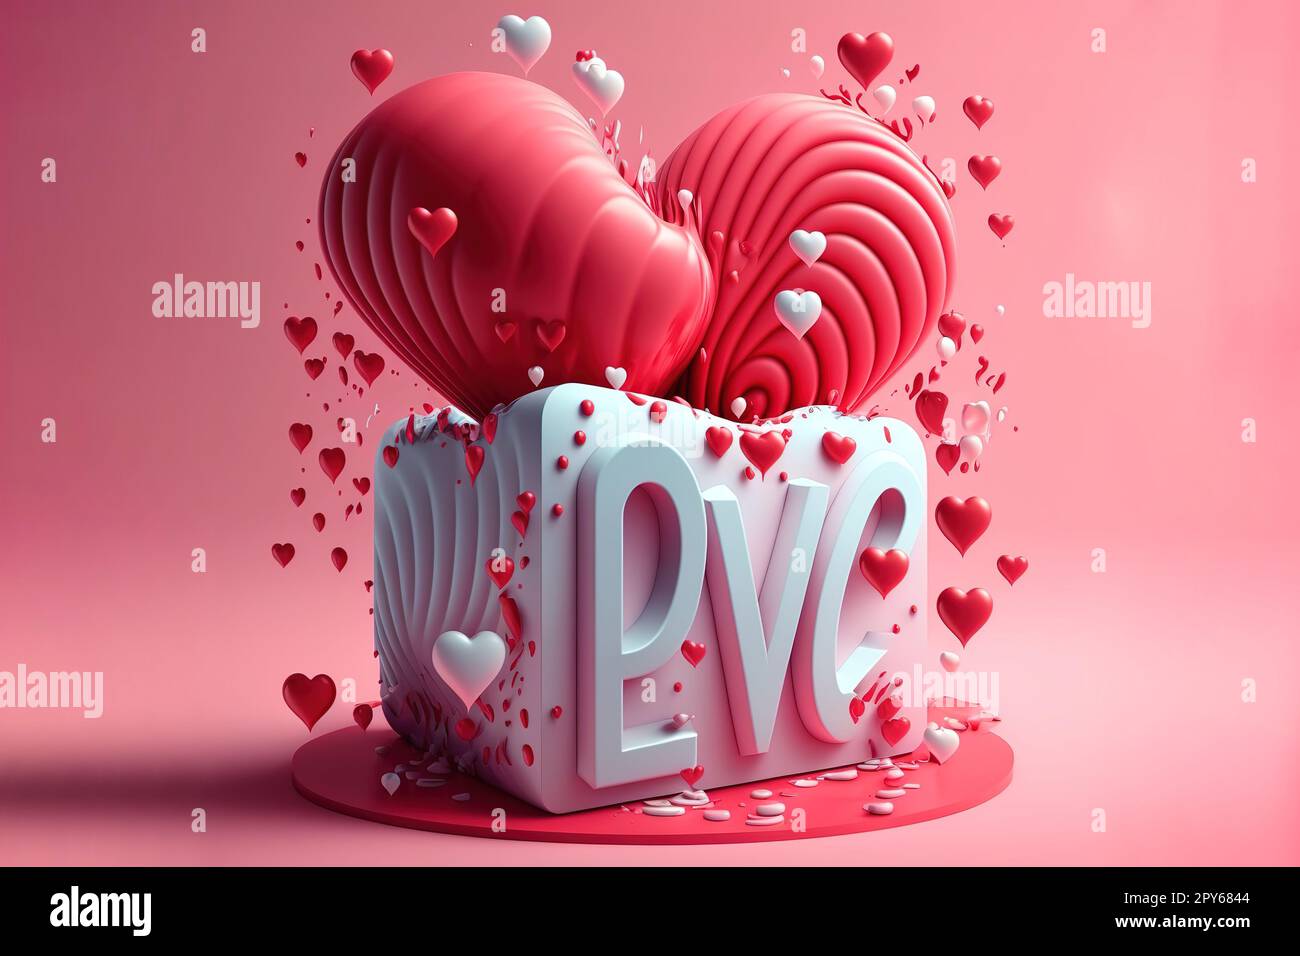 Celebré el Día de San Valentín rodeada de amor